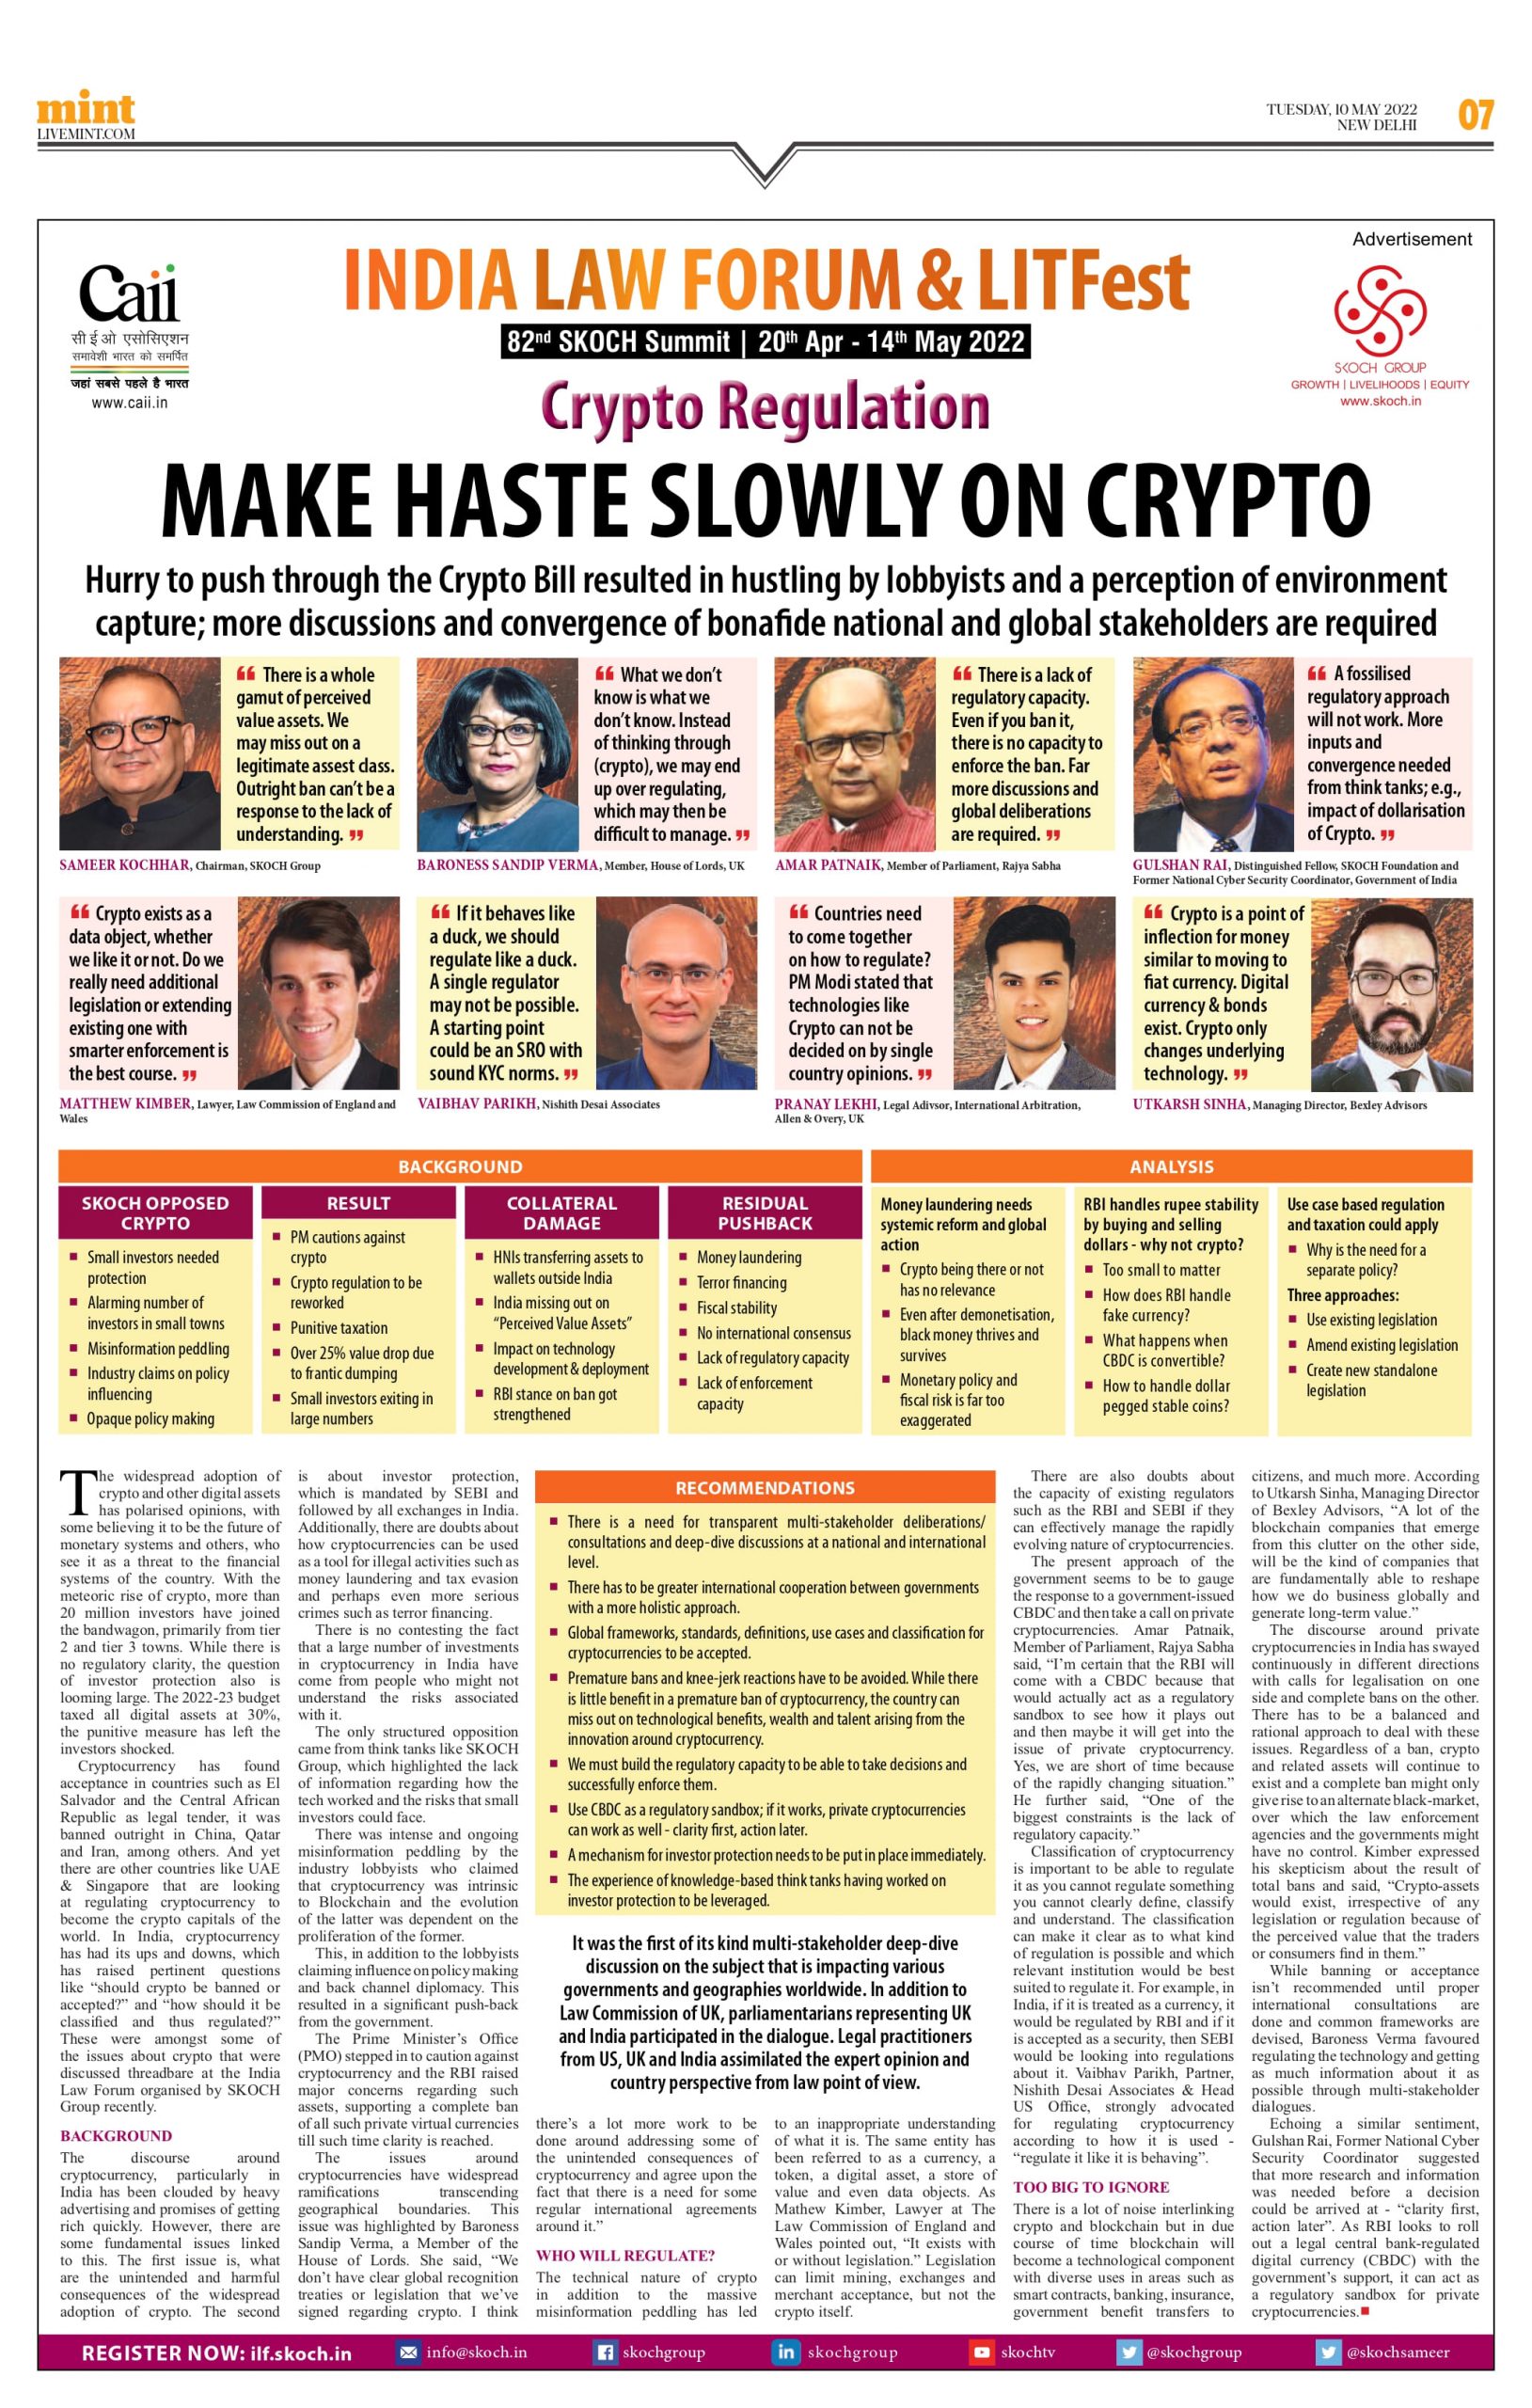 Make Haste Slowly on Crypto